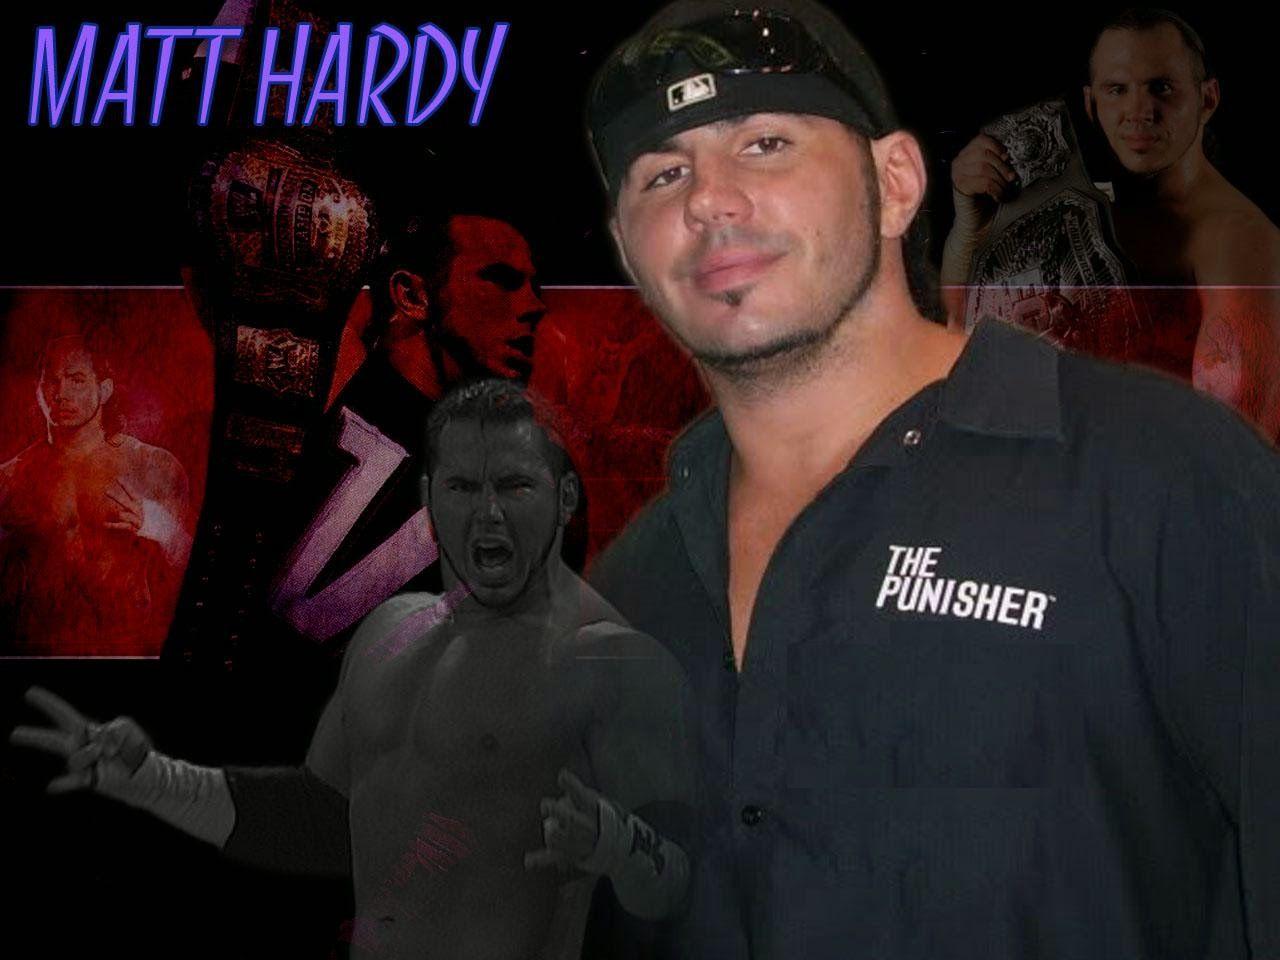 Matt Hardy HD Wallpaper Free Download. WWE HD WALLPAPER FREE